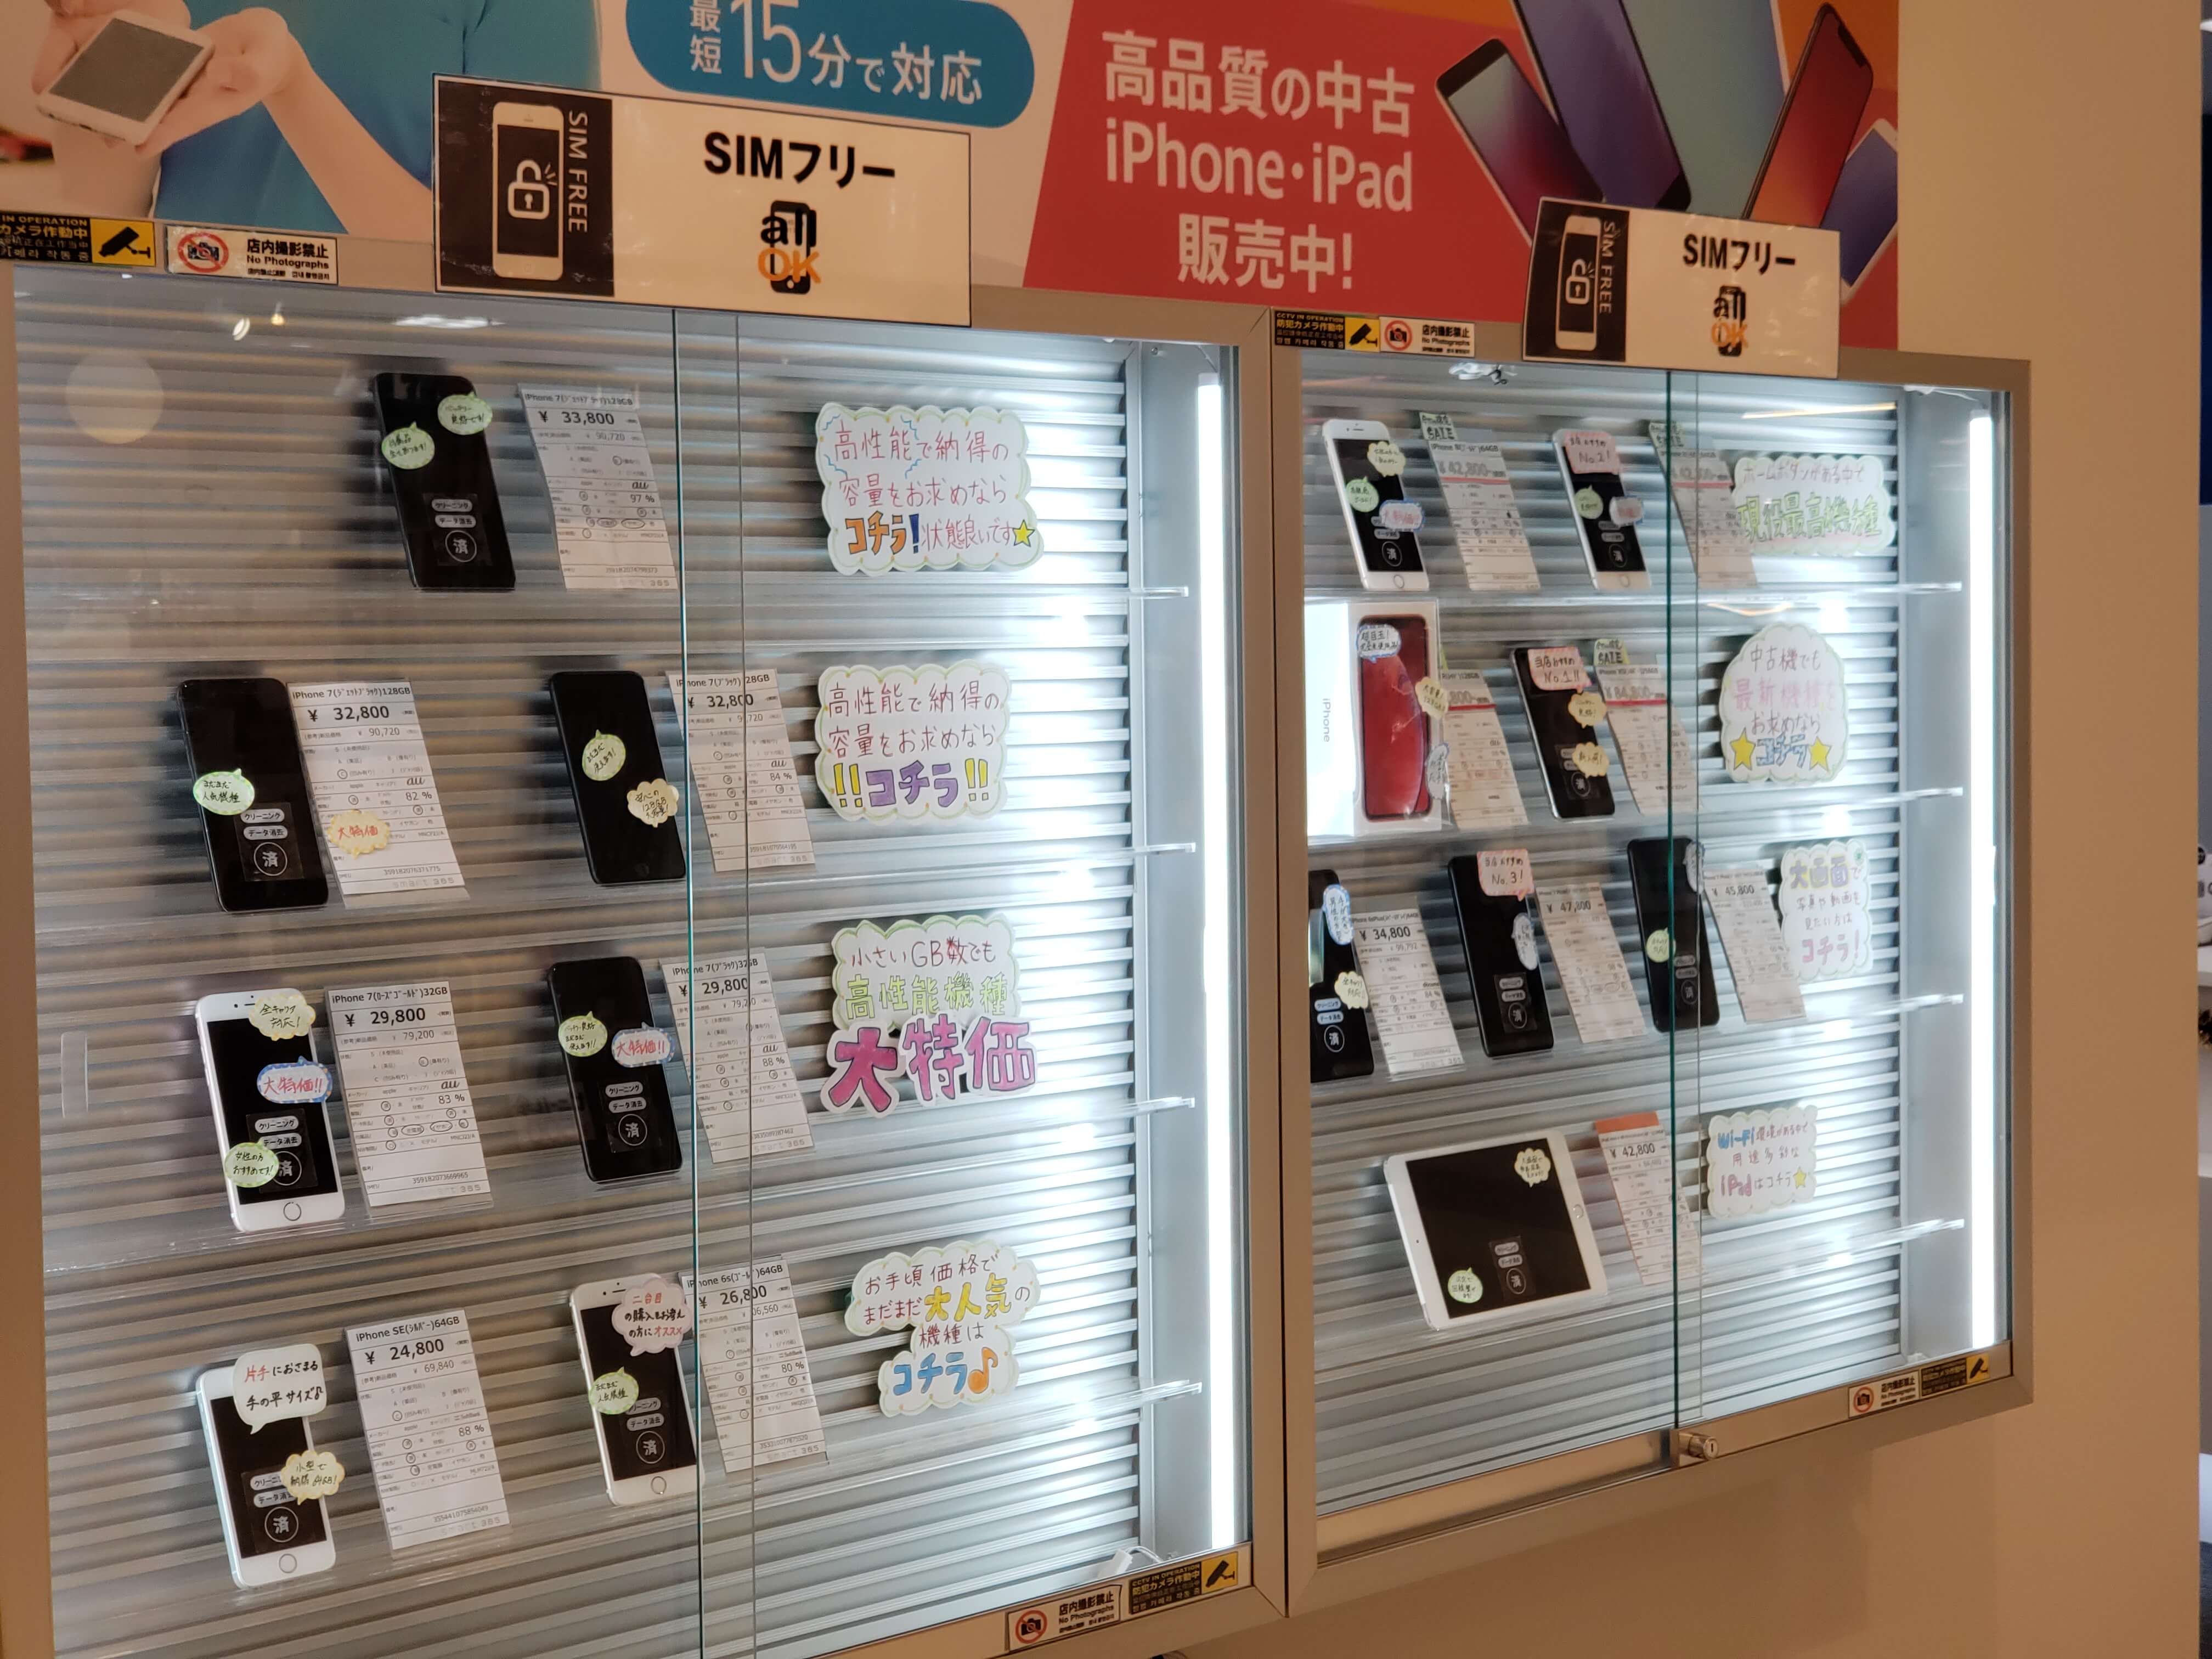 高品質な中古iPhone/iPadをお探しならsmart365和泉店へ